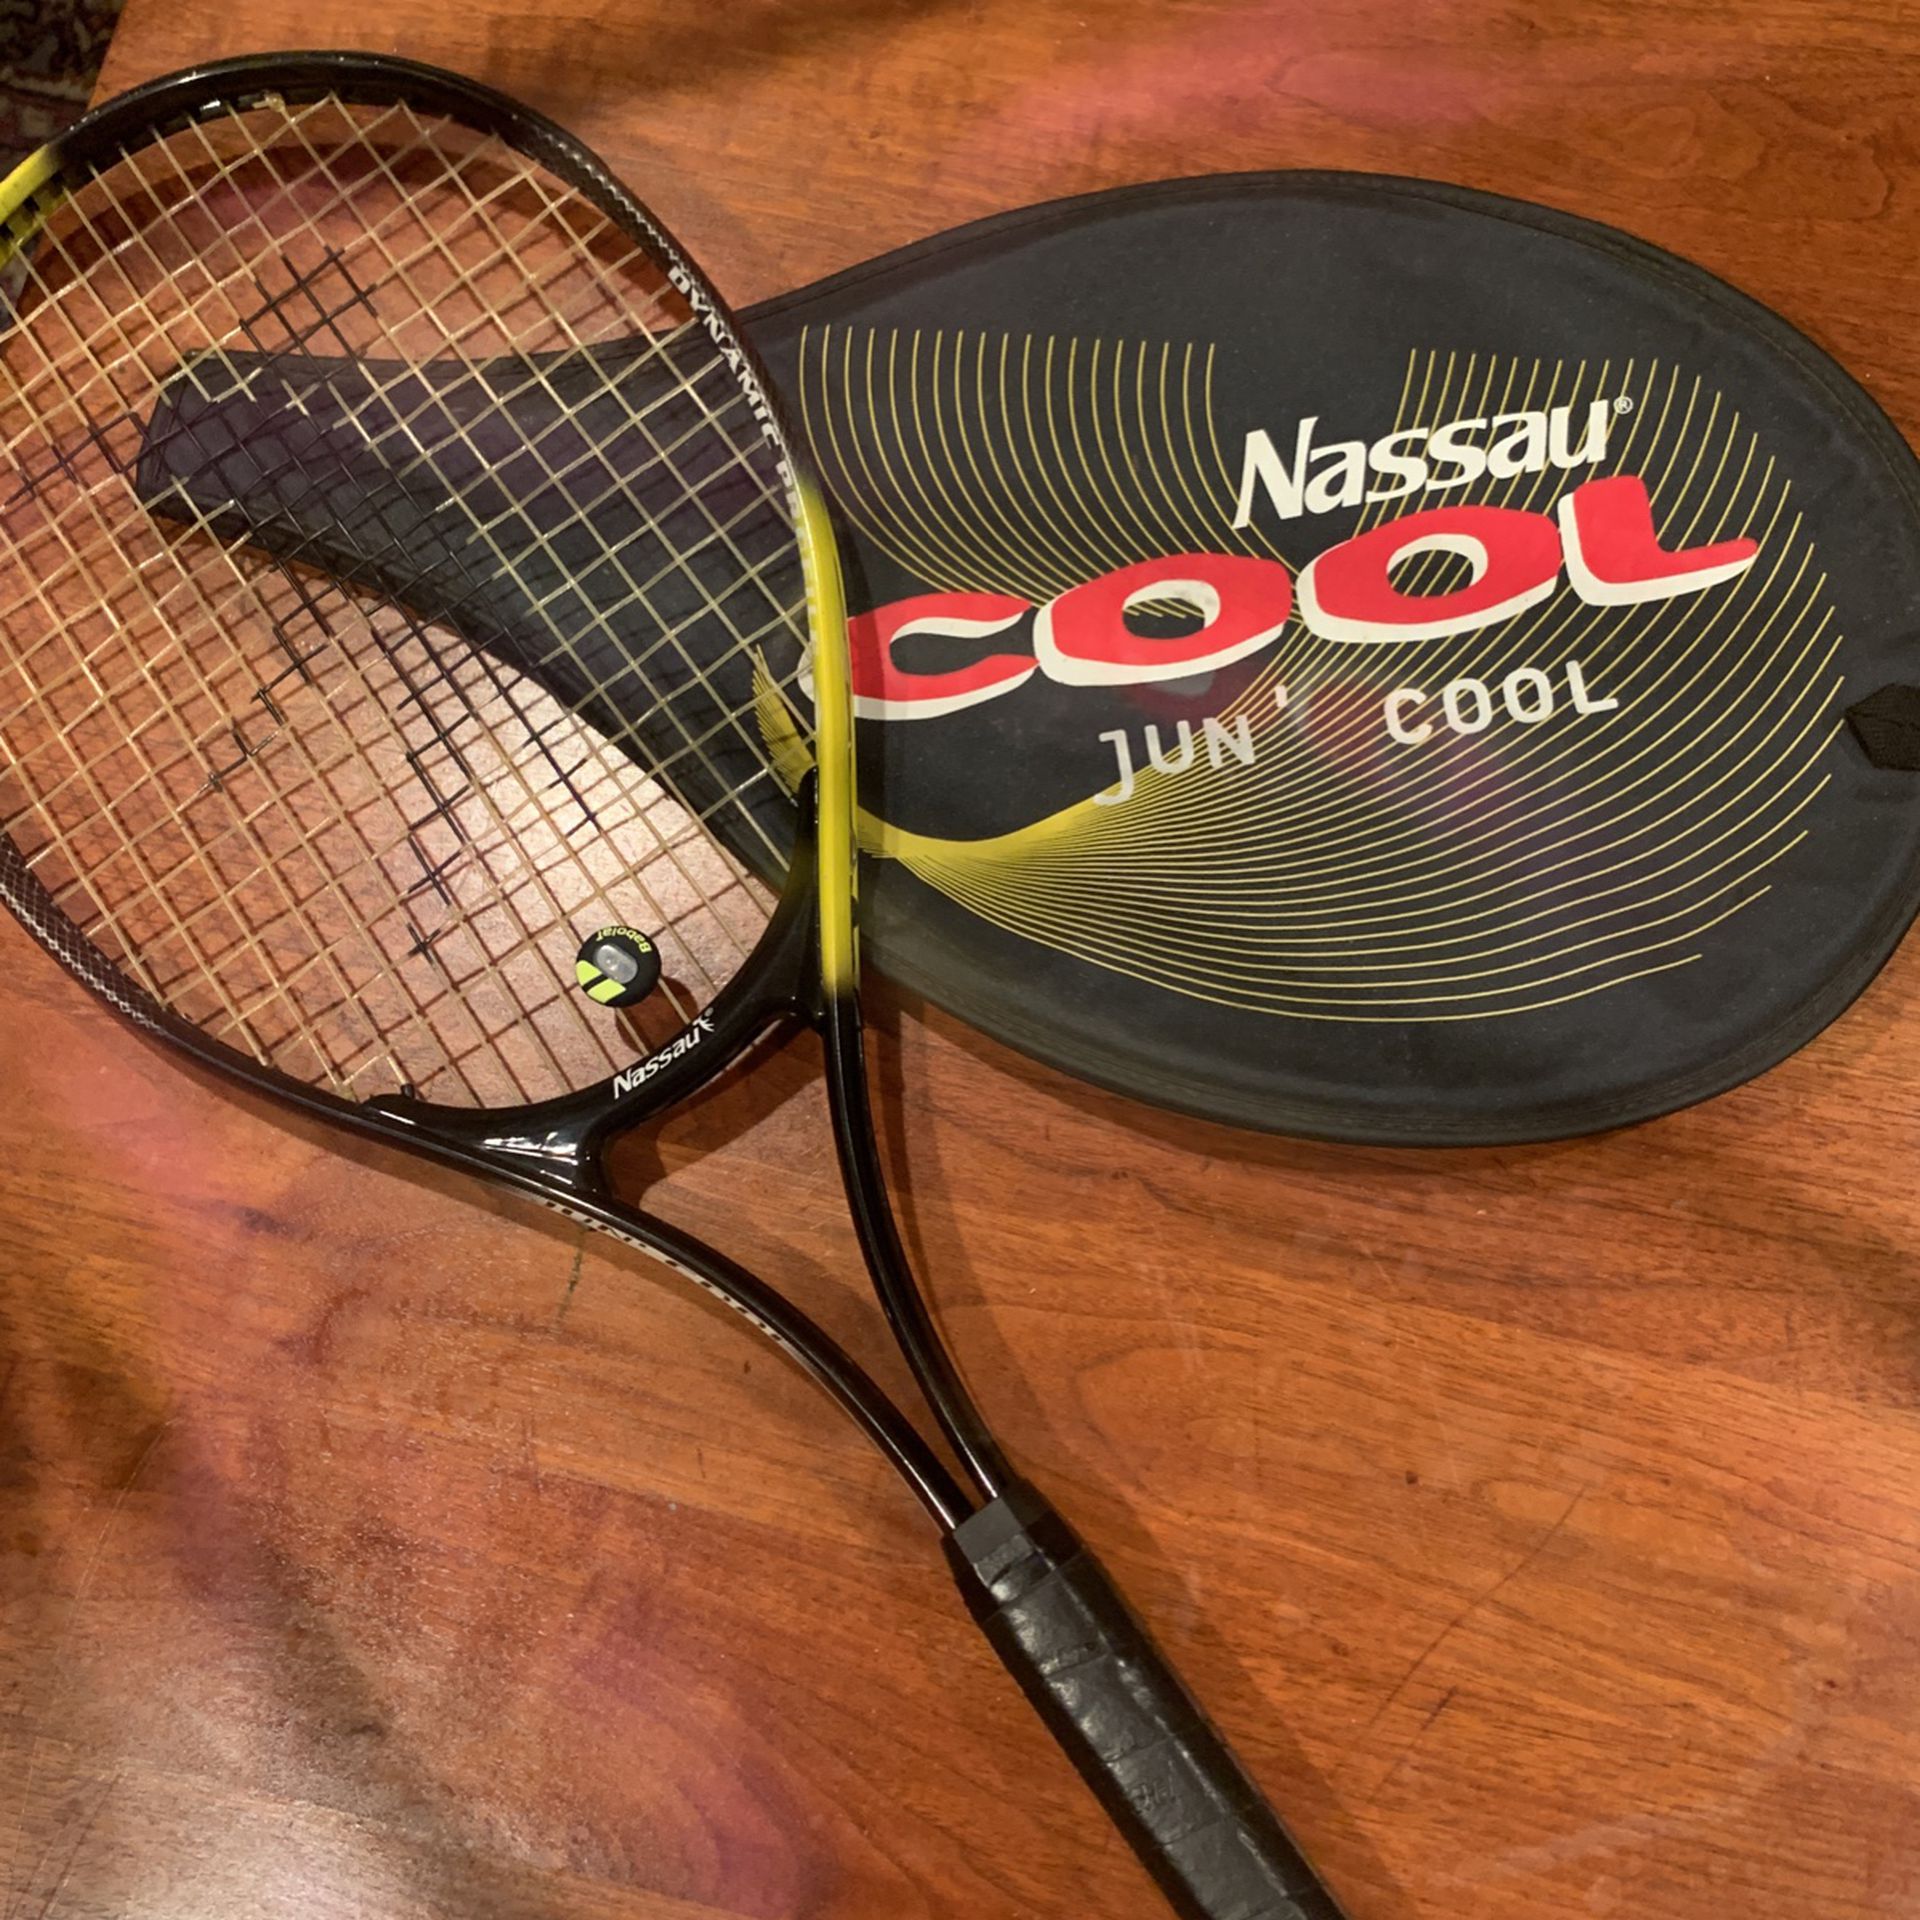 Nassau Cool Jun’ Cool Tennis Racket . Practically Brand New 